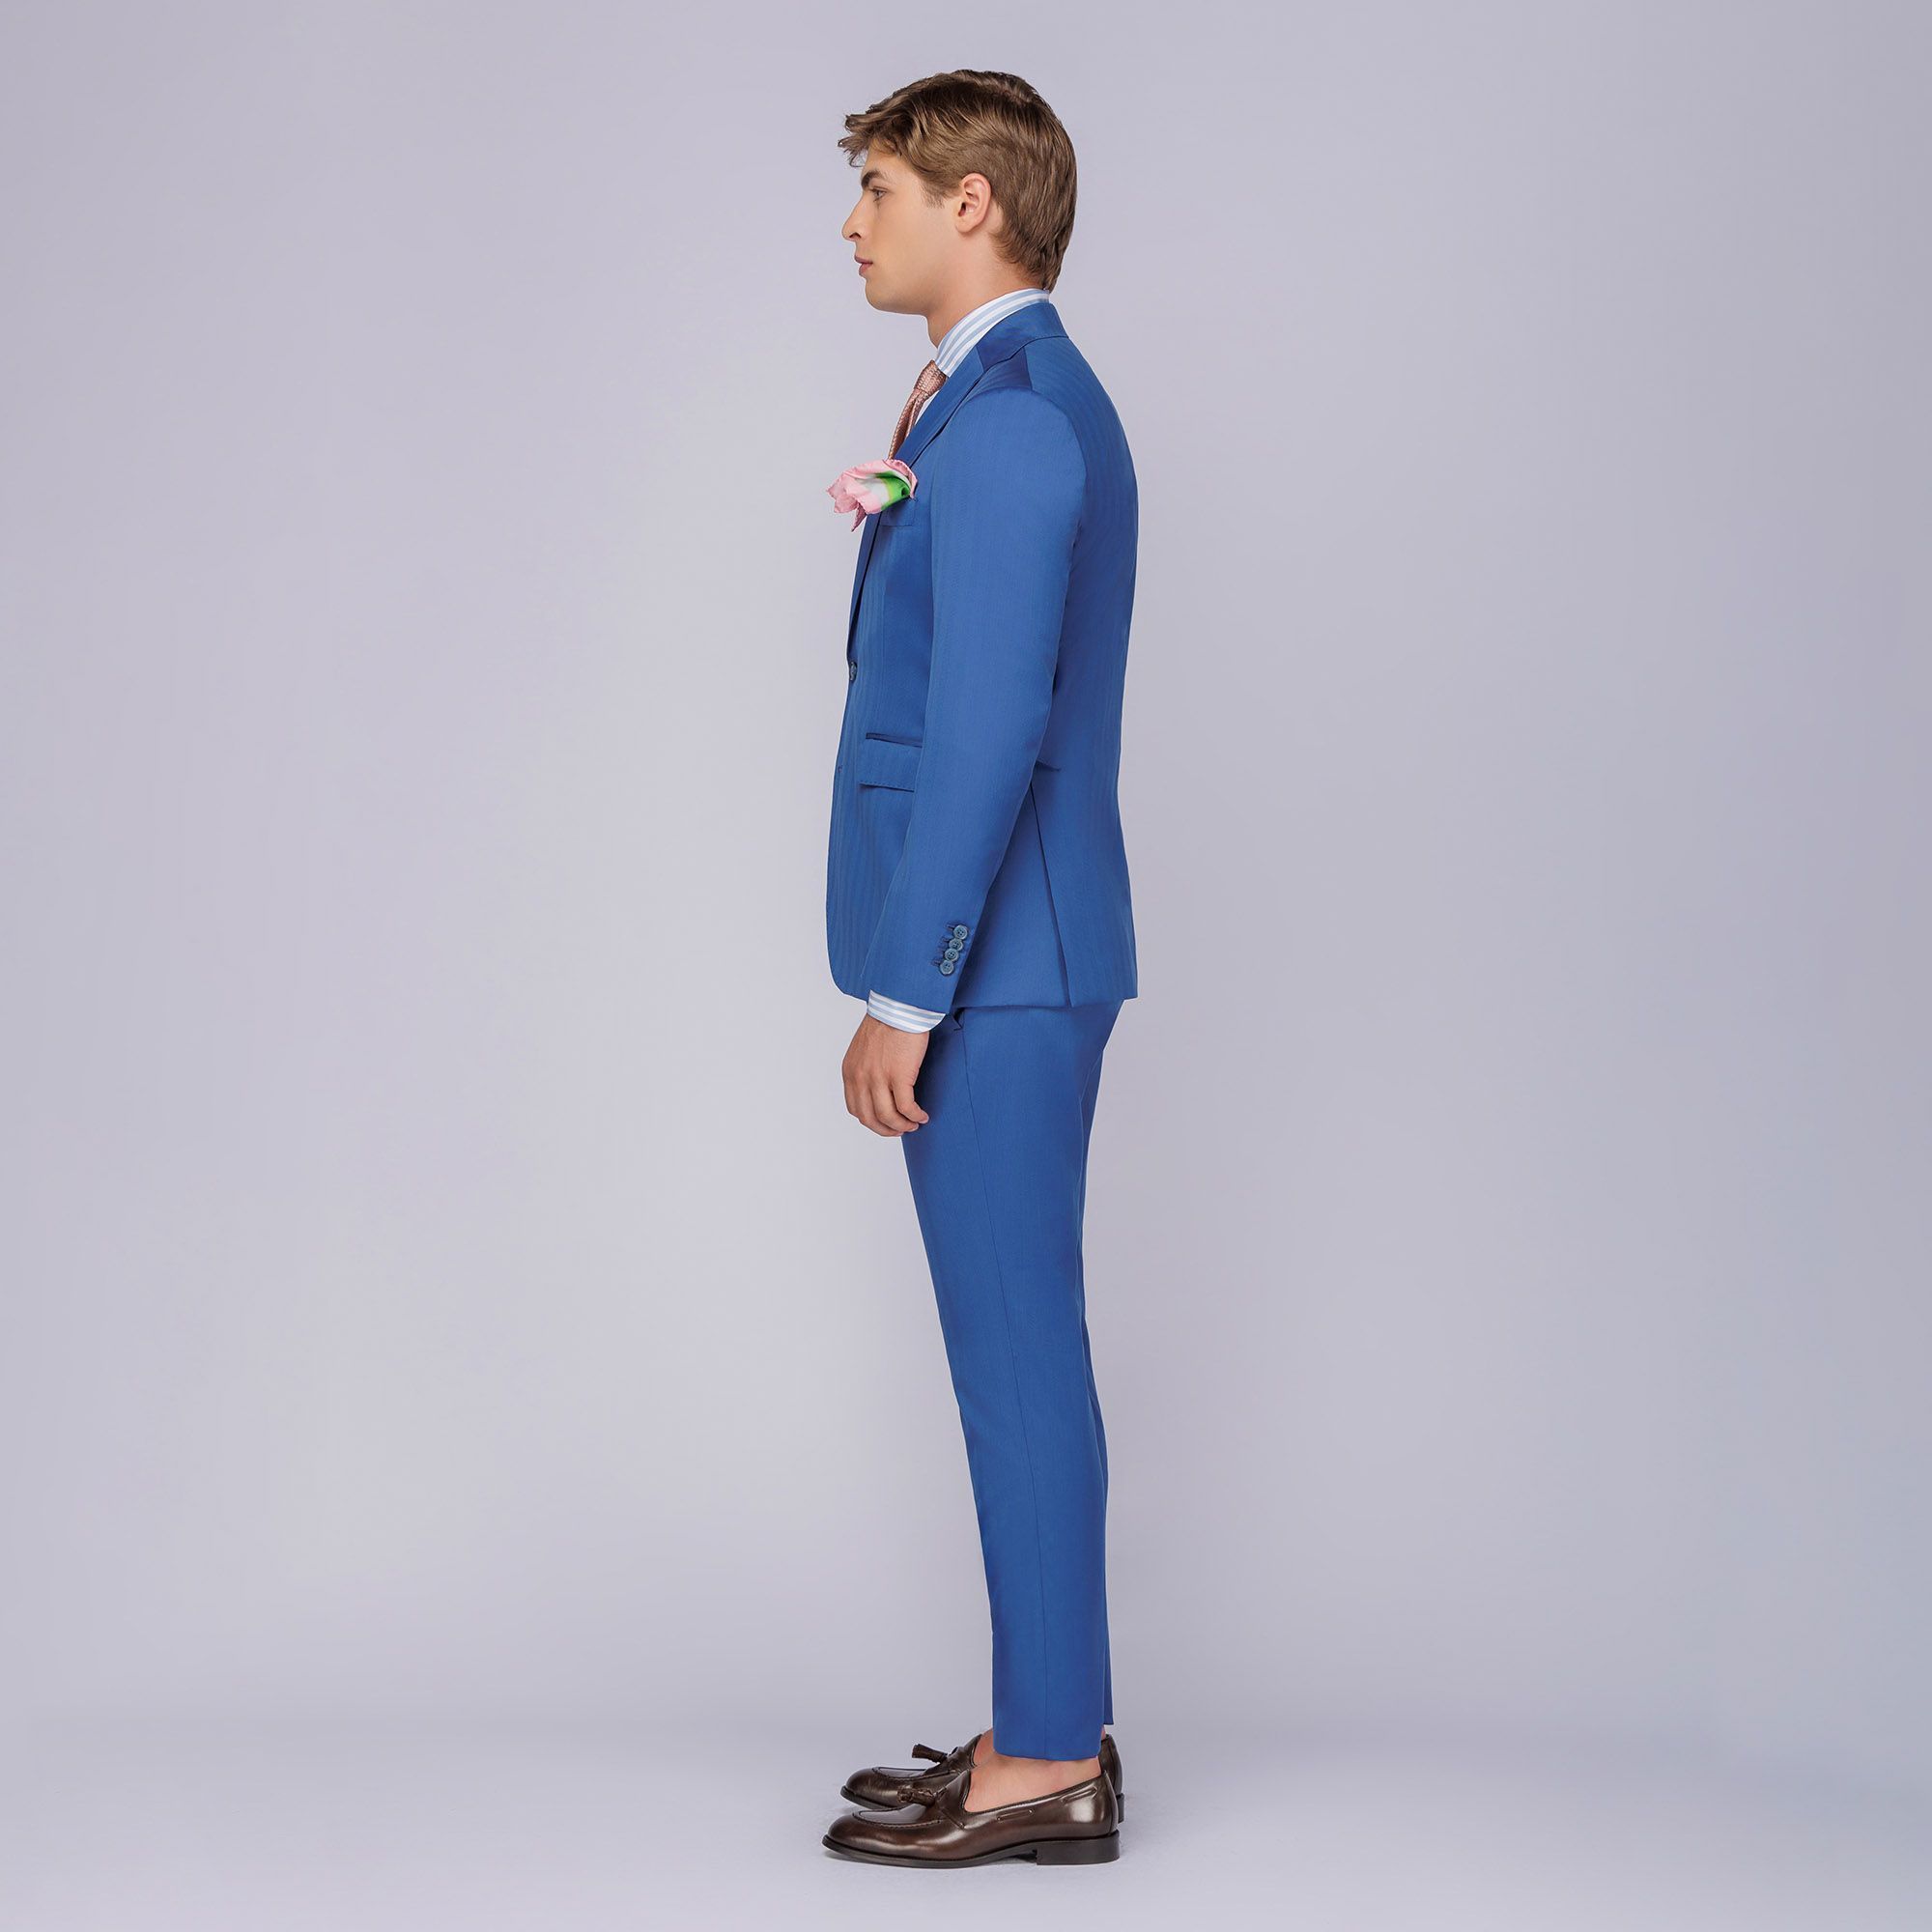 Men's Solaro Suit Blue